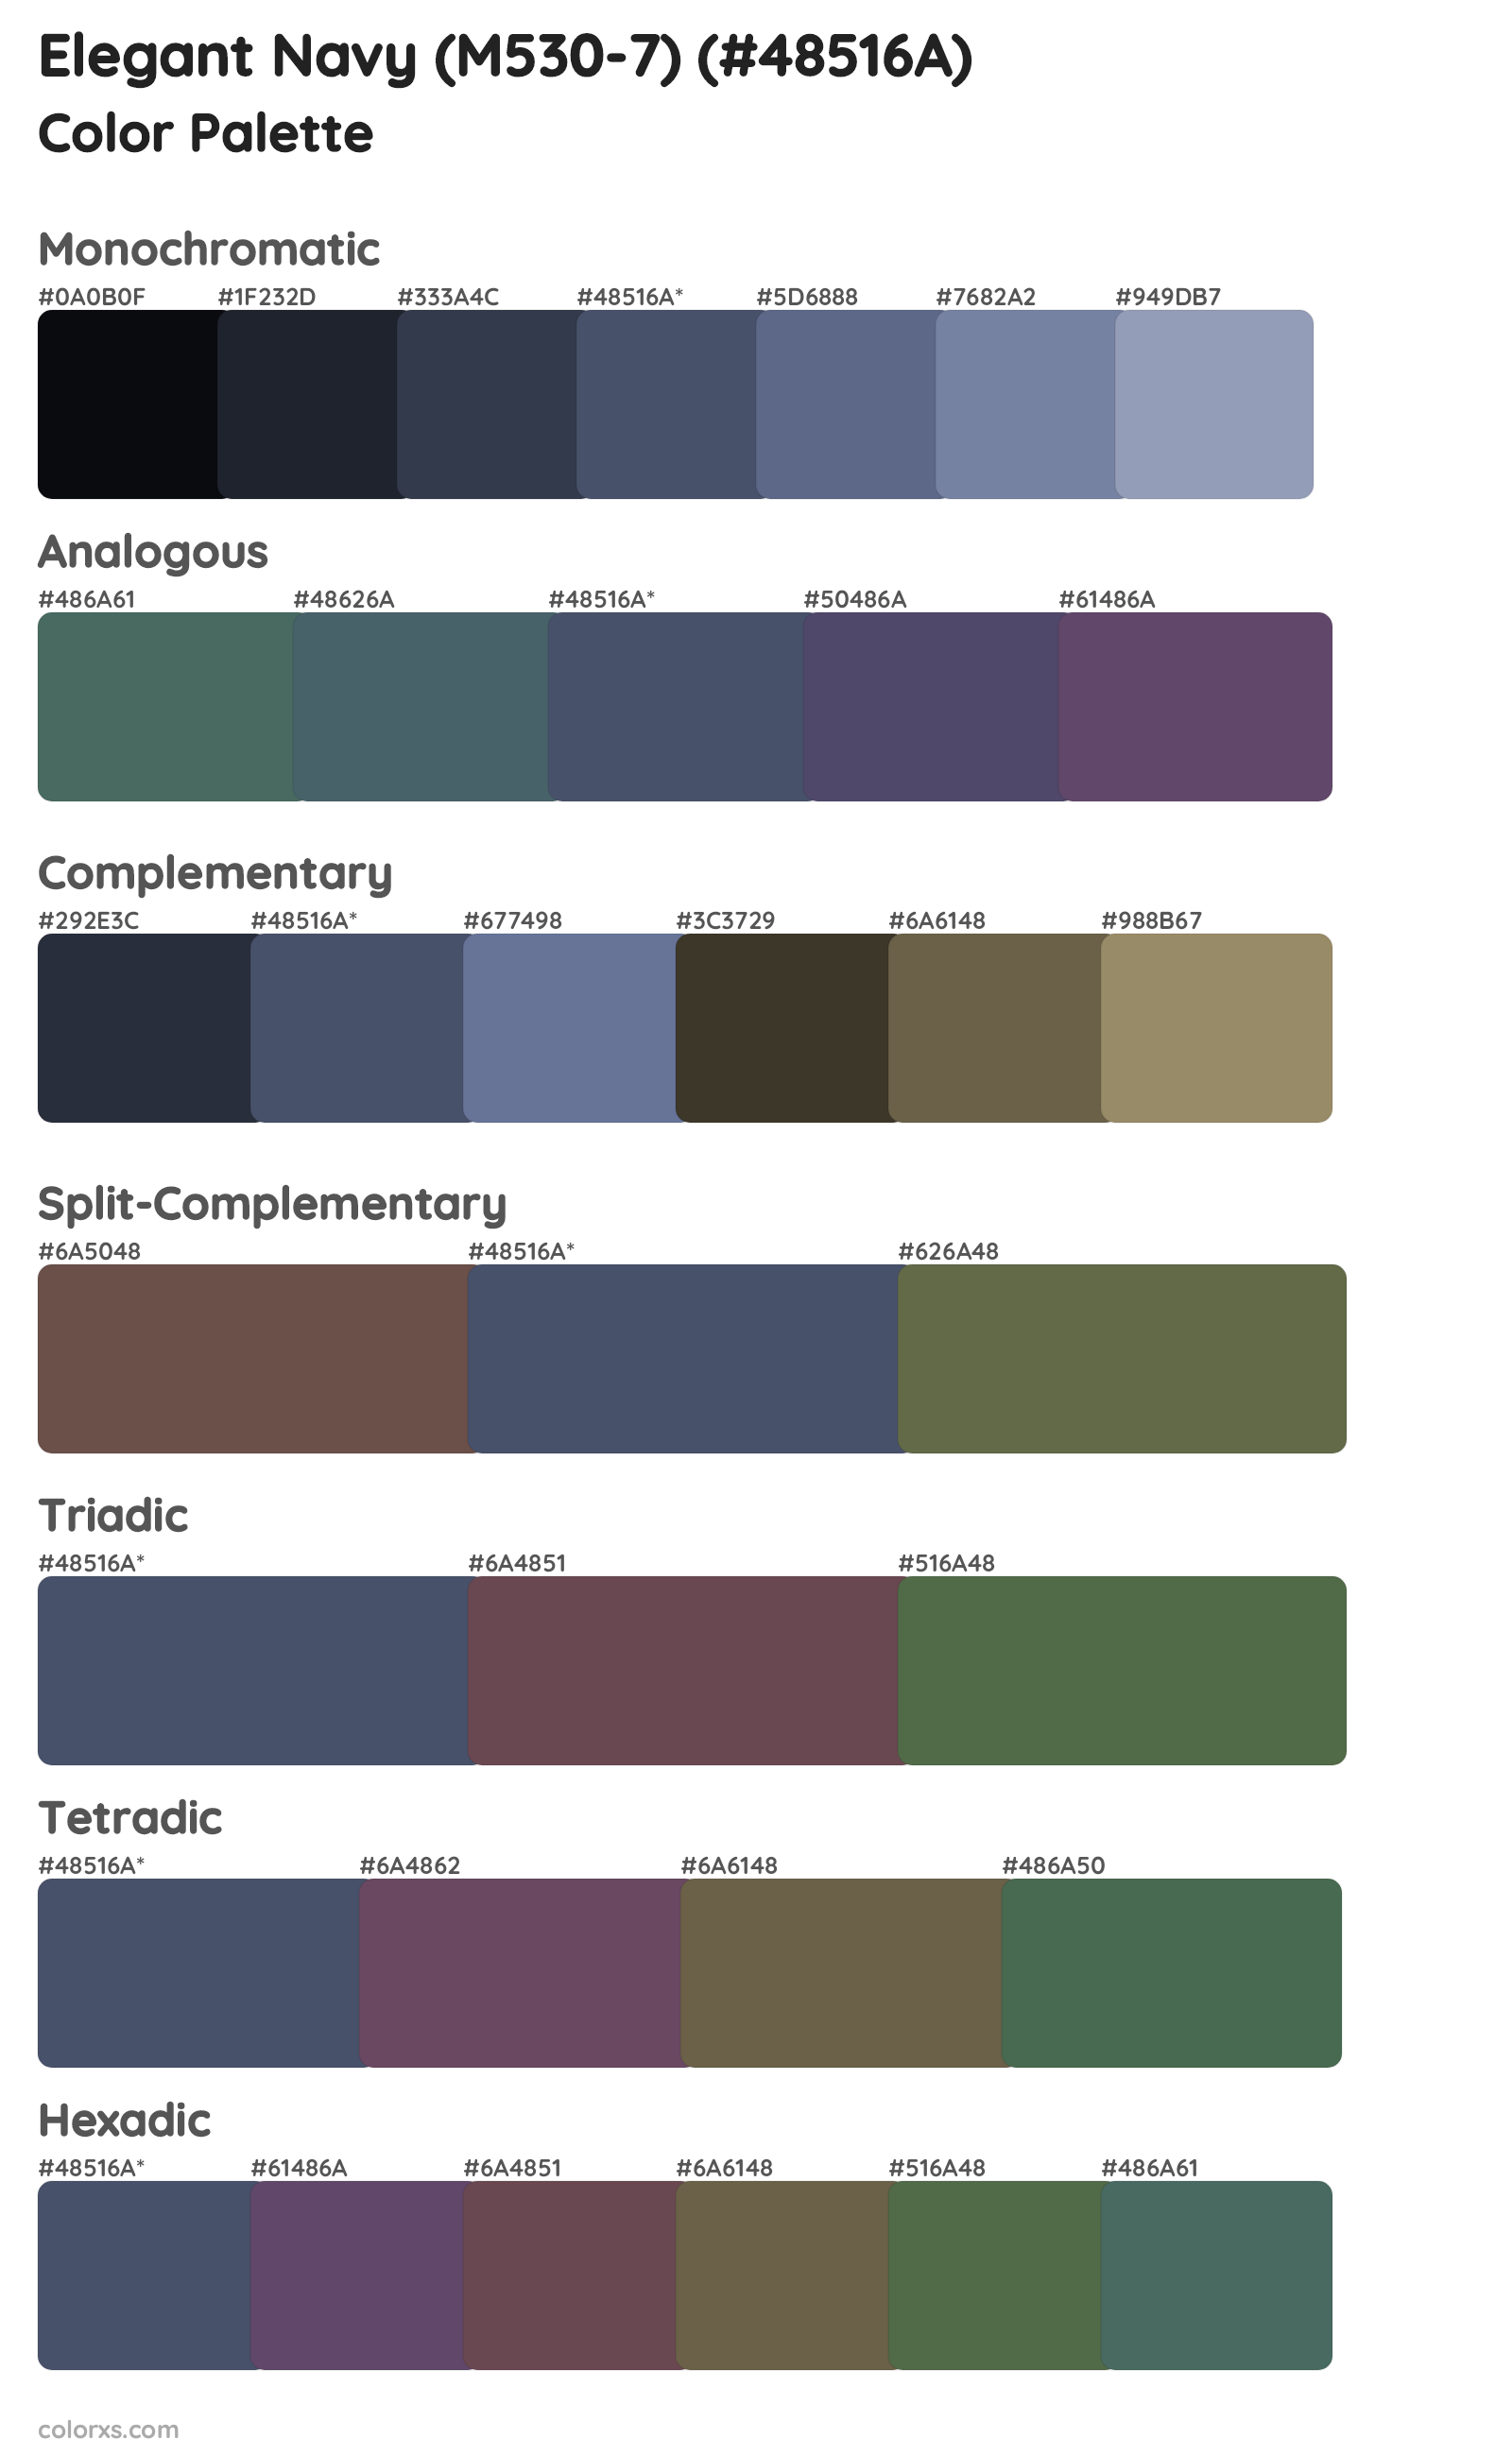 Elegant Navy (M530-7) Color Scheme Palettes